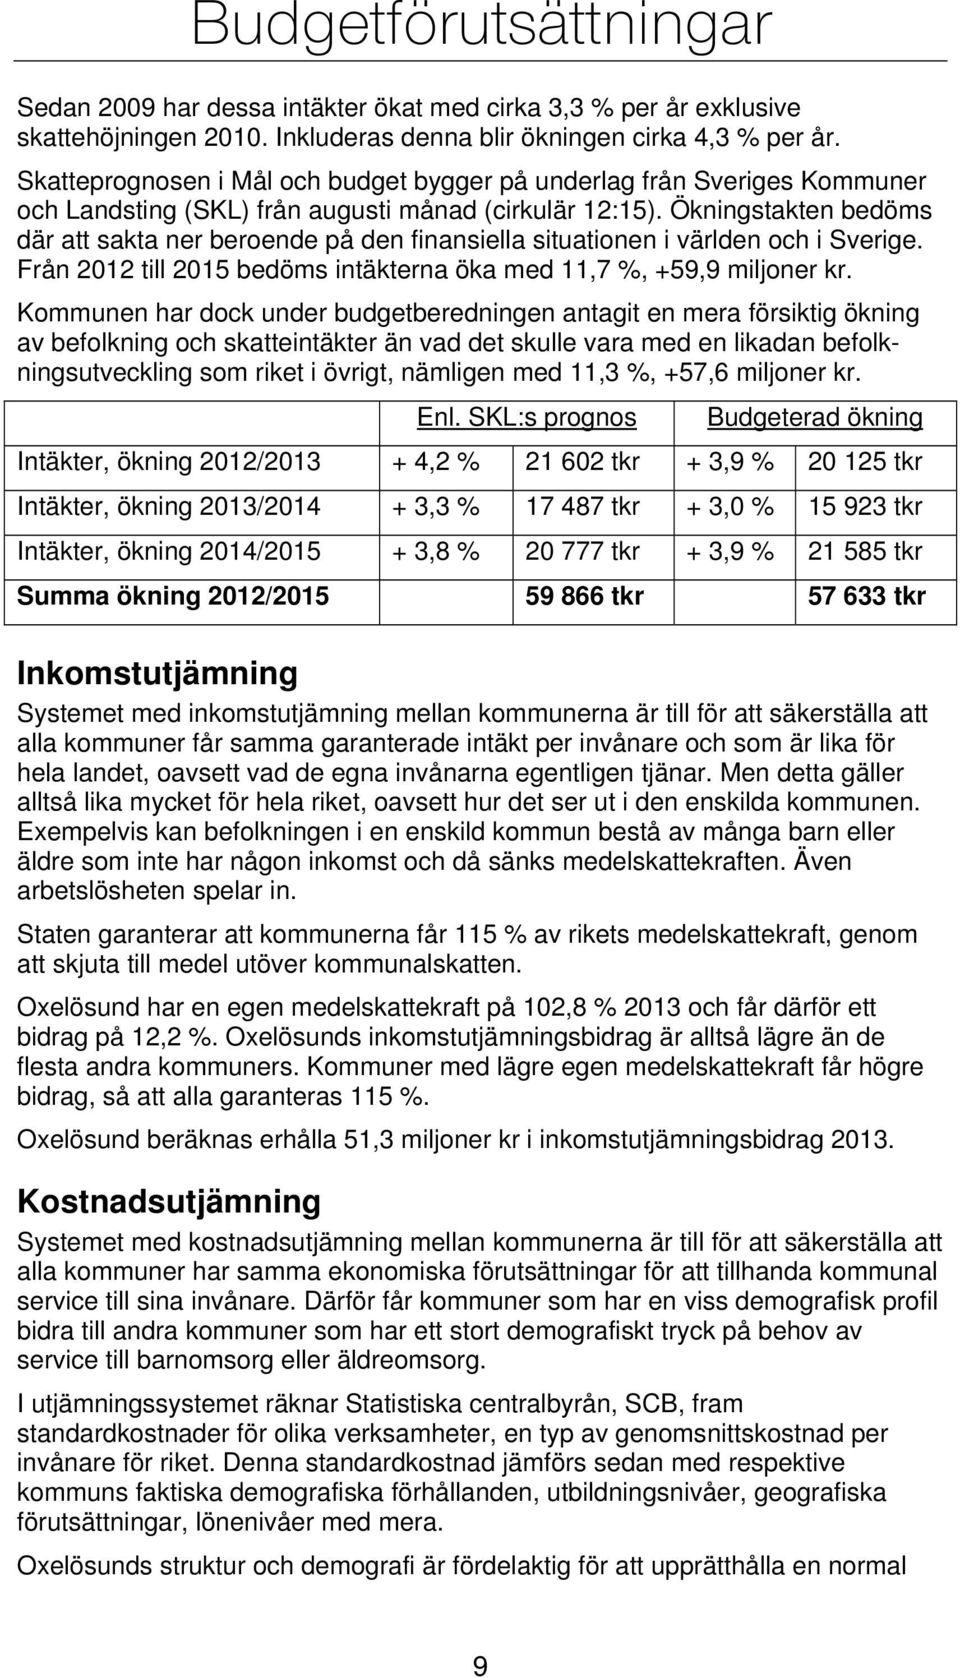 Ökningstakten bedöms där att sakta ner beroende på den finansiella situationen i världen och i Sverige. Från 2012 till 2015 bedöms intäkterna öka med 11,7 %, +59,9 miljoner kr.